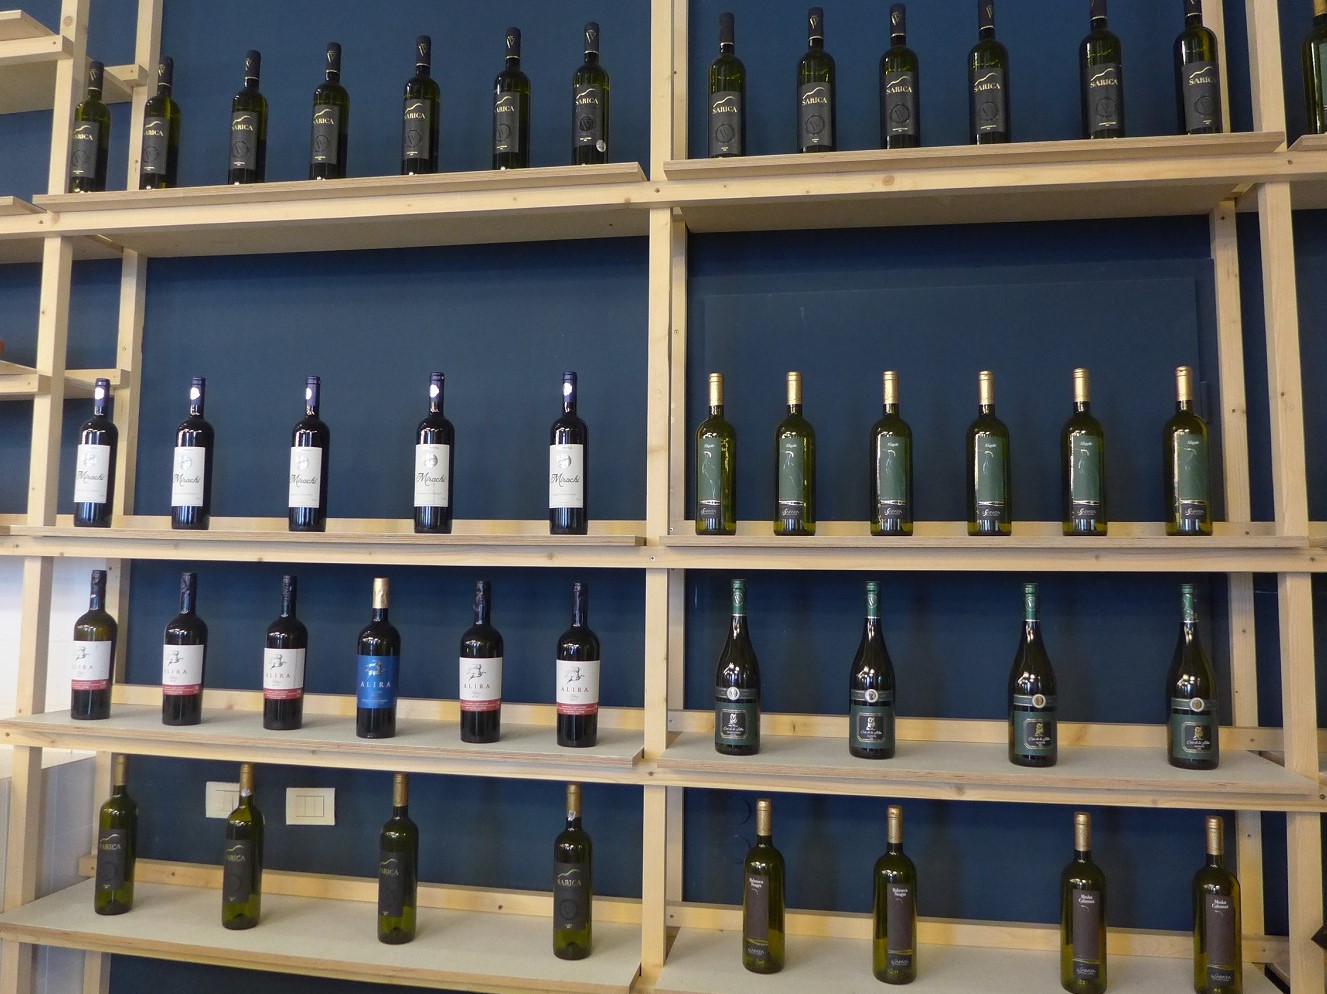 Le vin servi dans le restaurant est produit dans la région qui se situe entre la côte de la mer Noire et le Danube : elle s’appelle la Dobrogea.